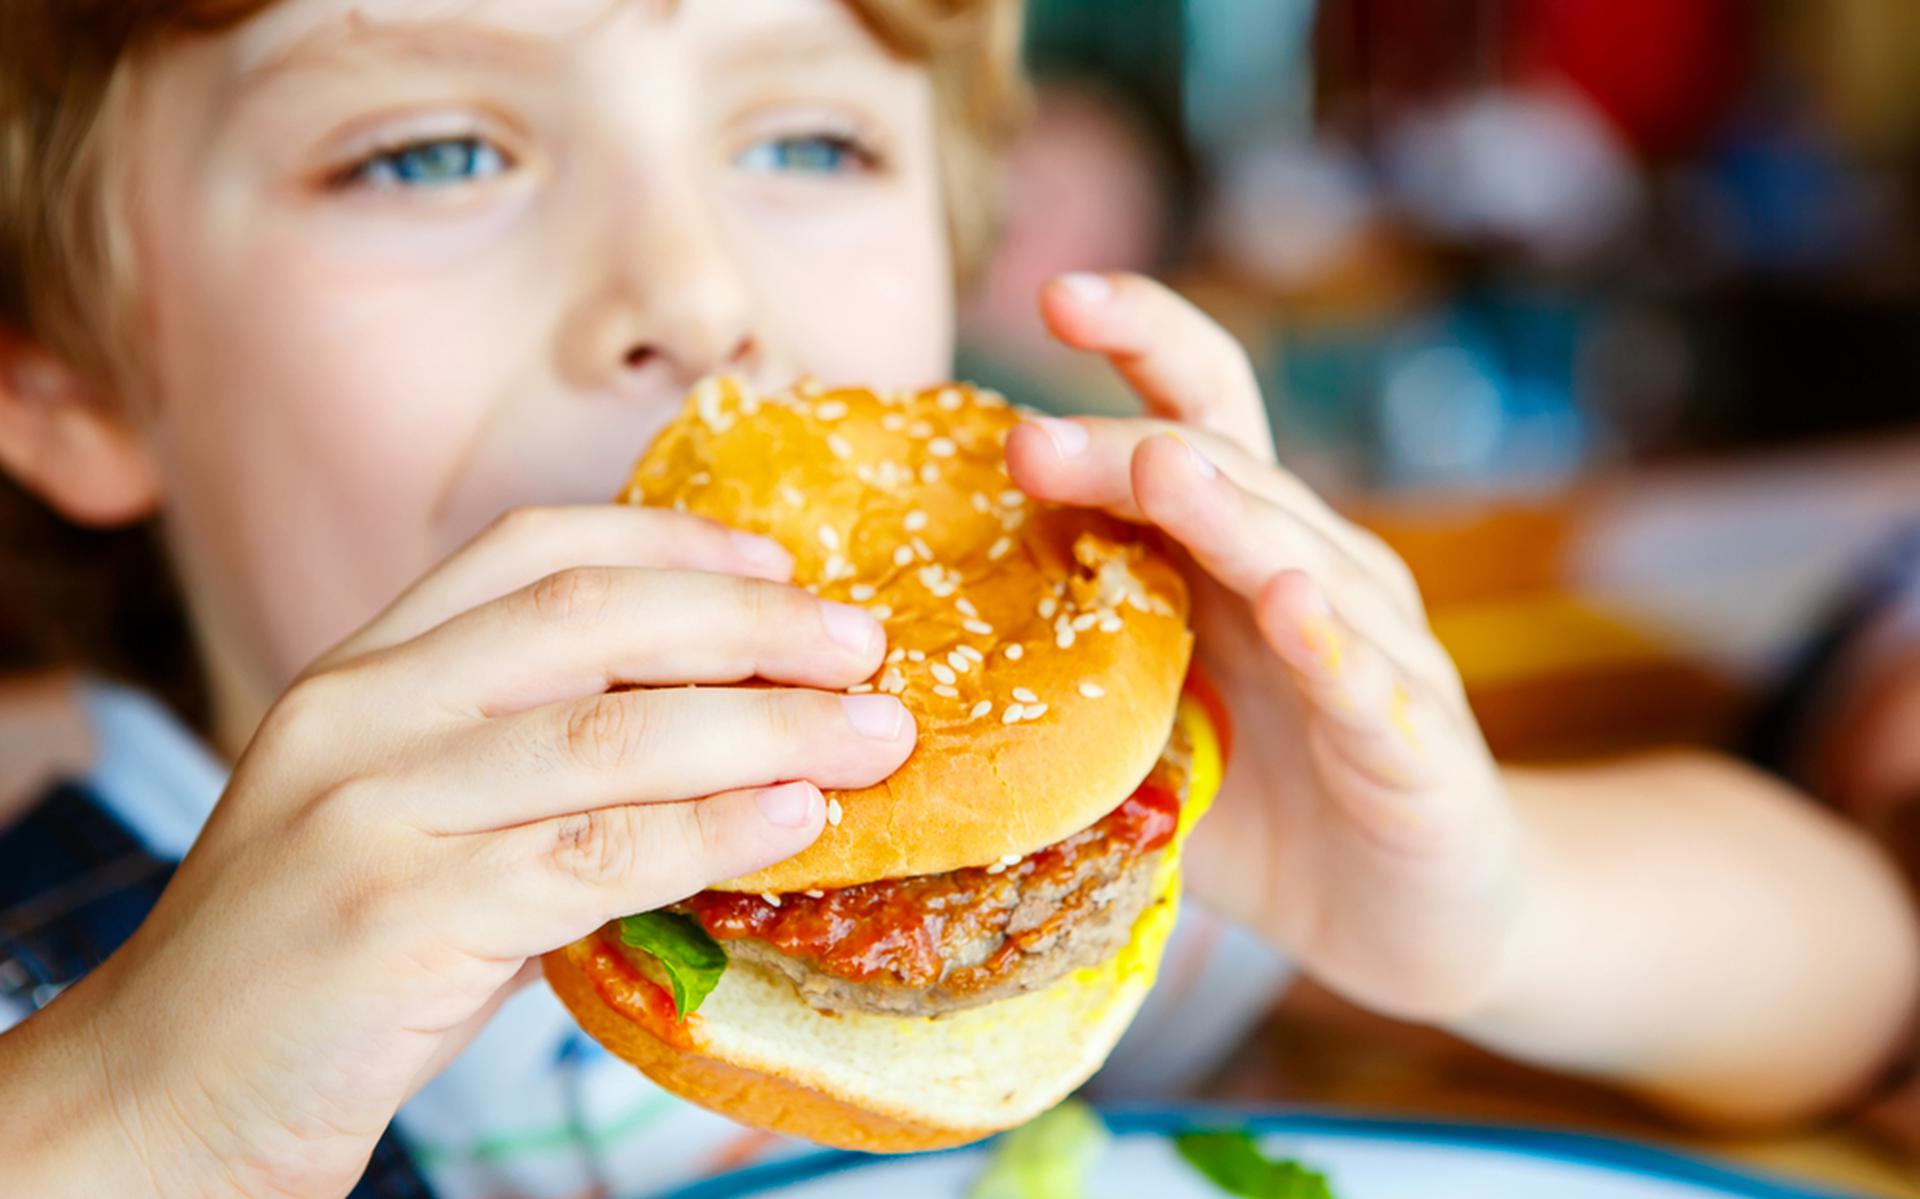 Als kinderen geen fastfood meer mogen kopen lopen ze minder risico op overgewicht, zo is de gedachte.